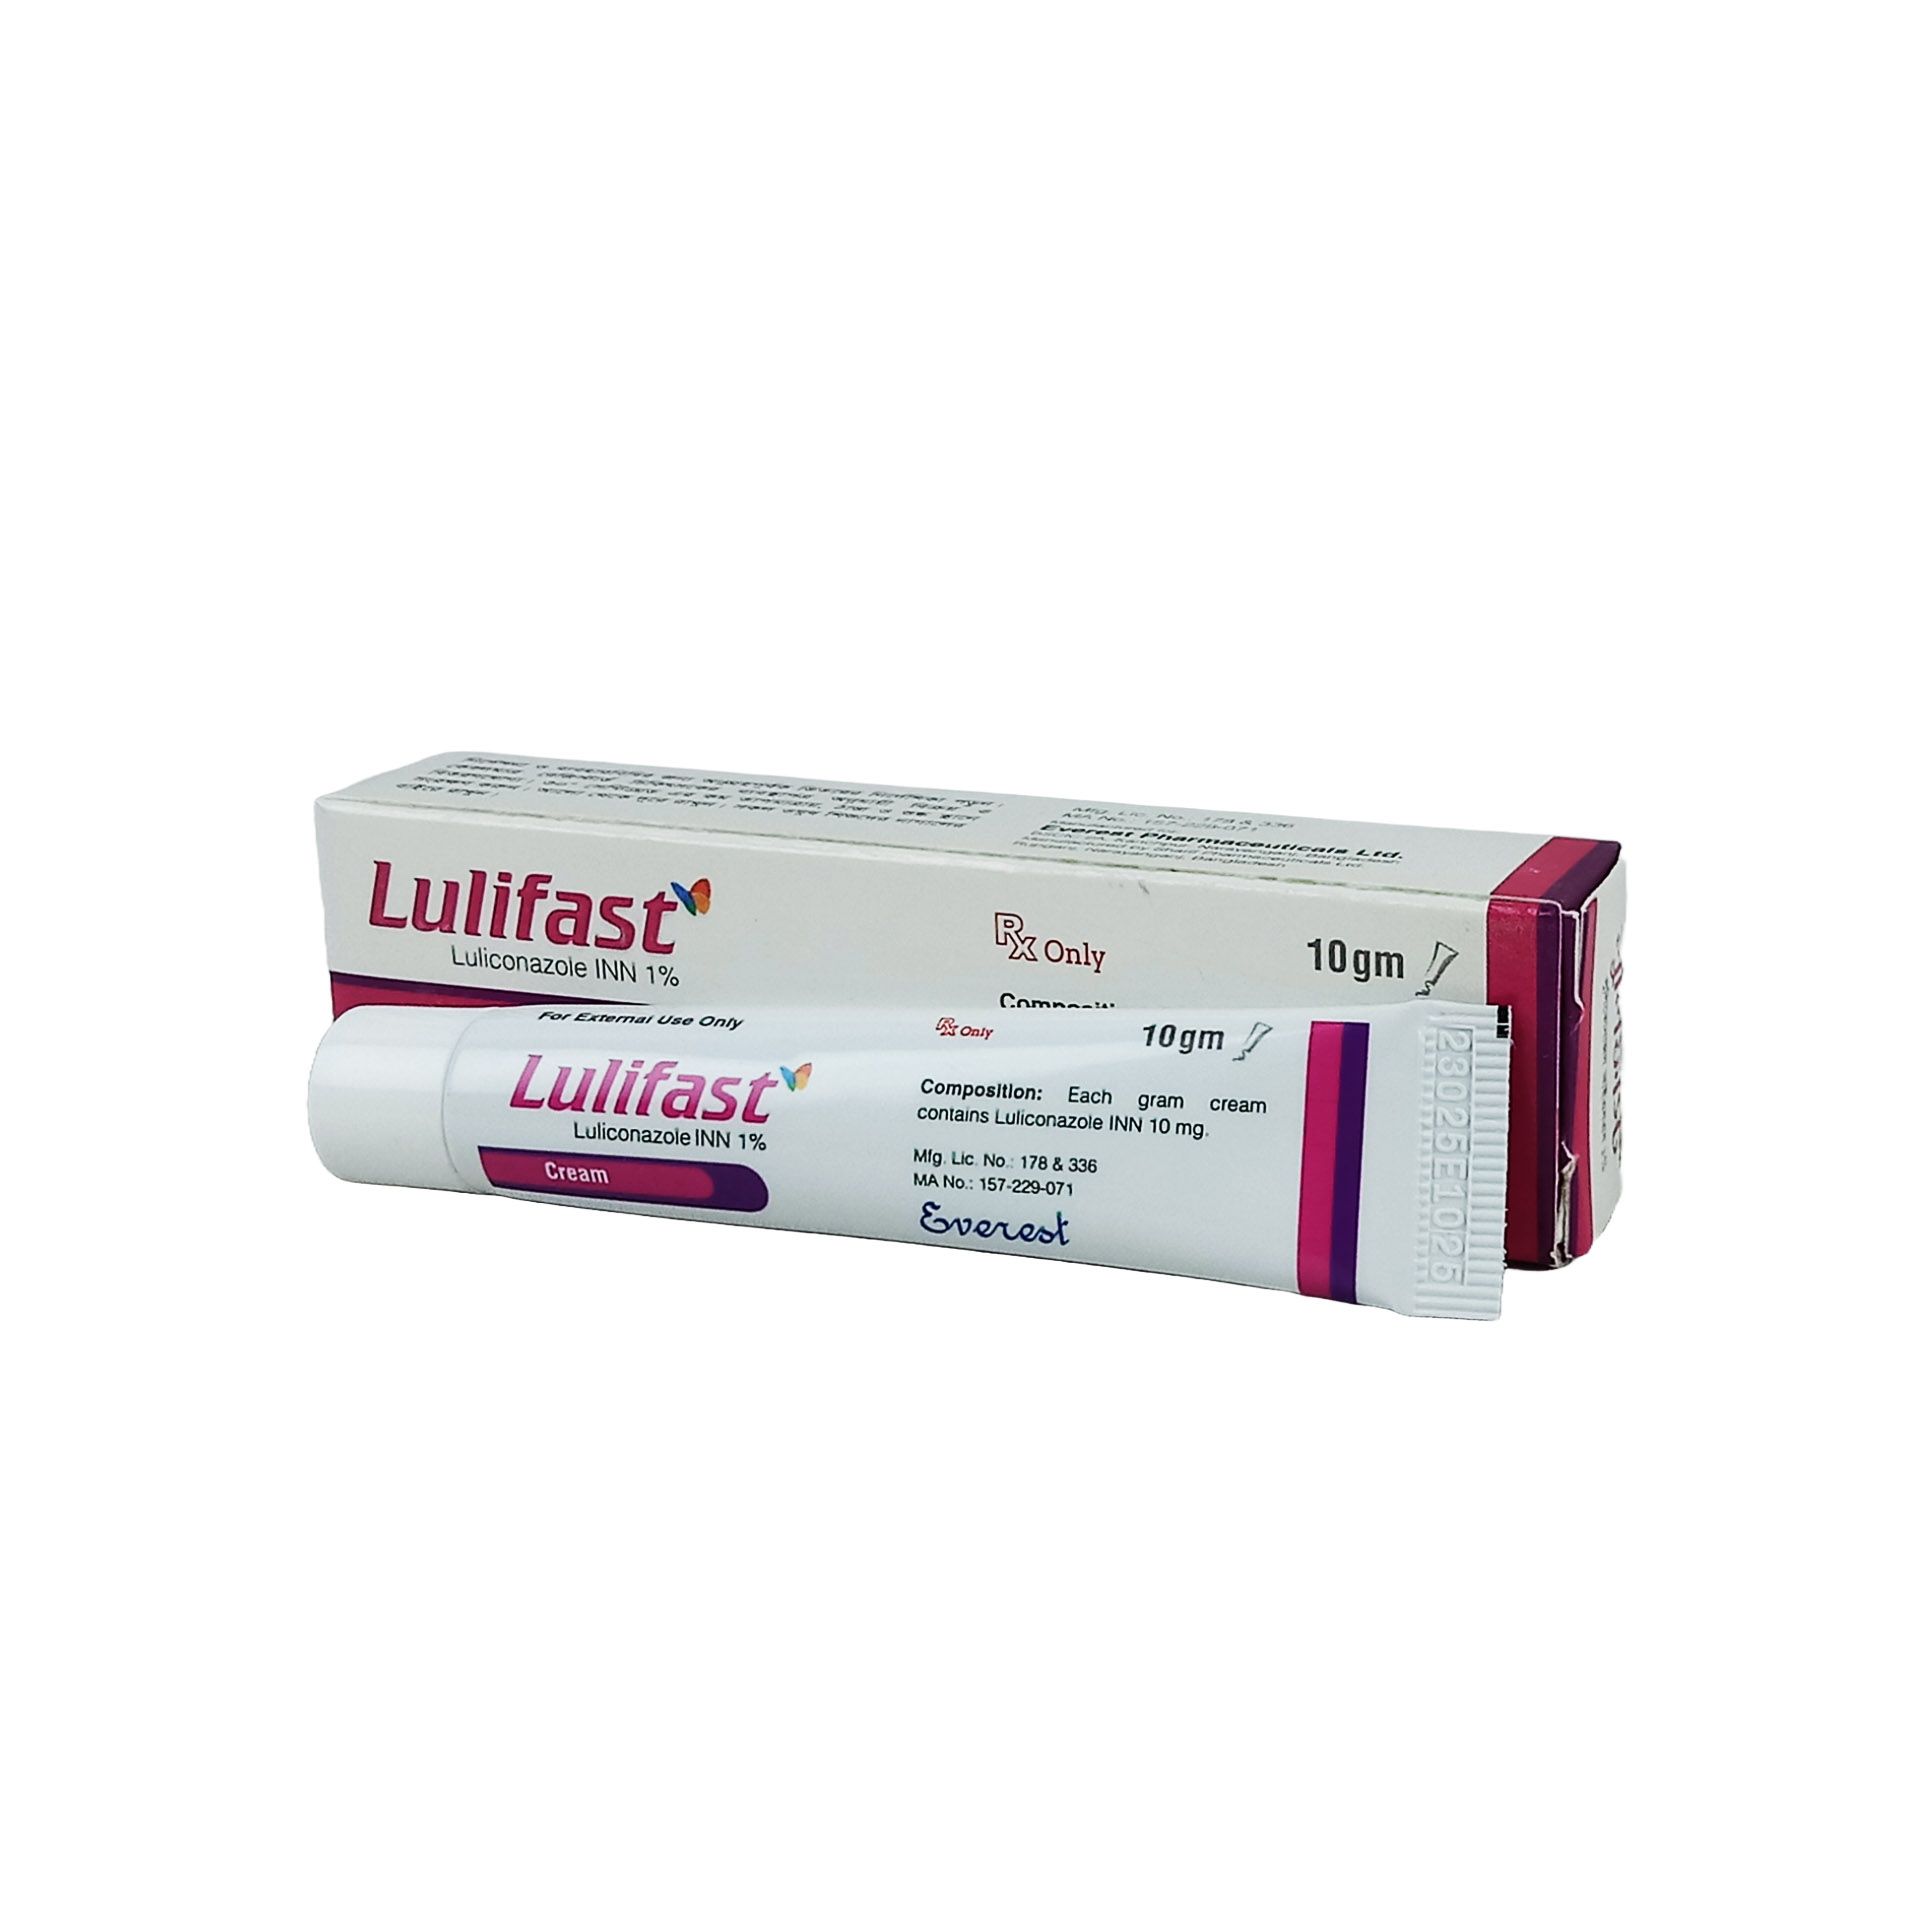 Lulifast 1% Cream